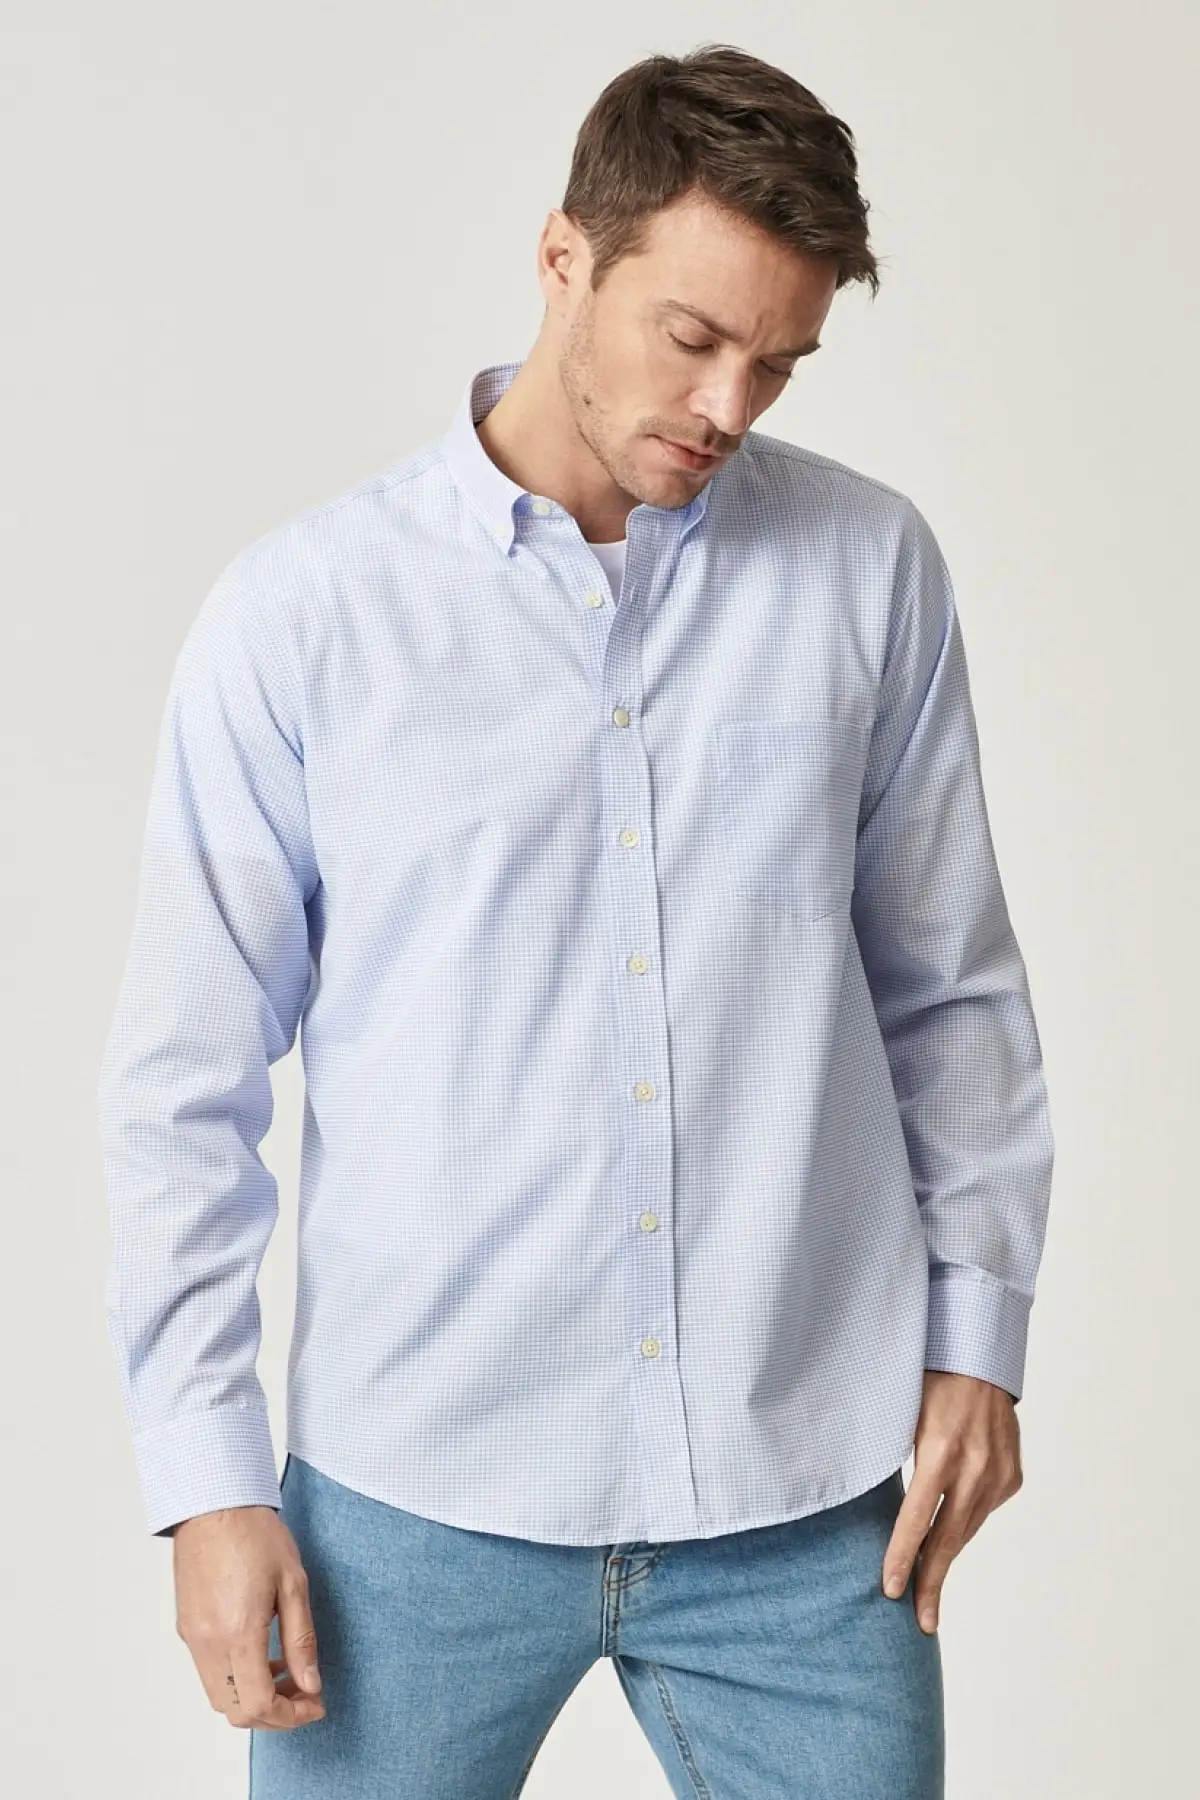 

Мужская рубашка в шотландскую клетку, светло-светильник бая Классическая рубашка с множеством разрезов, пуговицами на лацканах